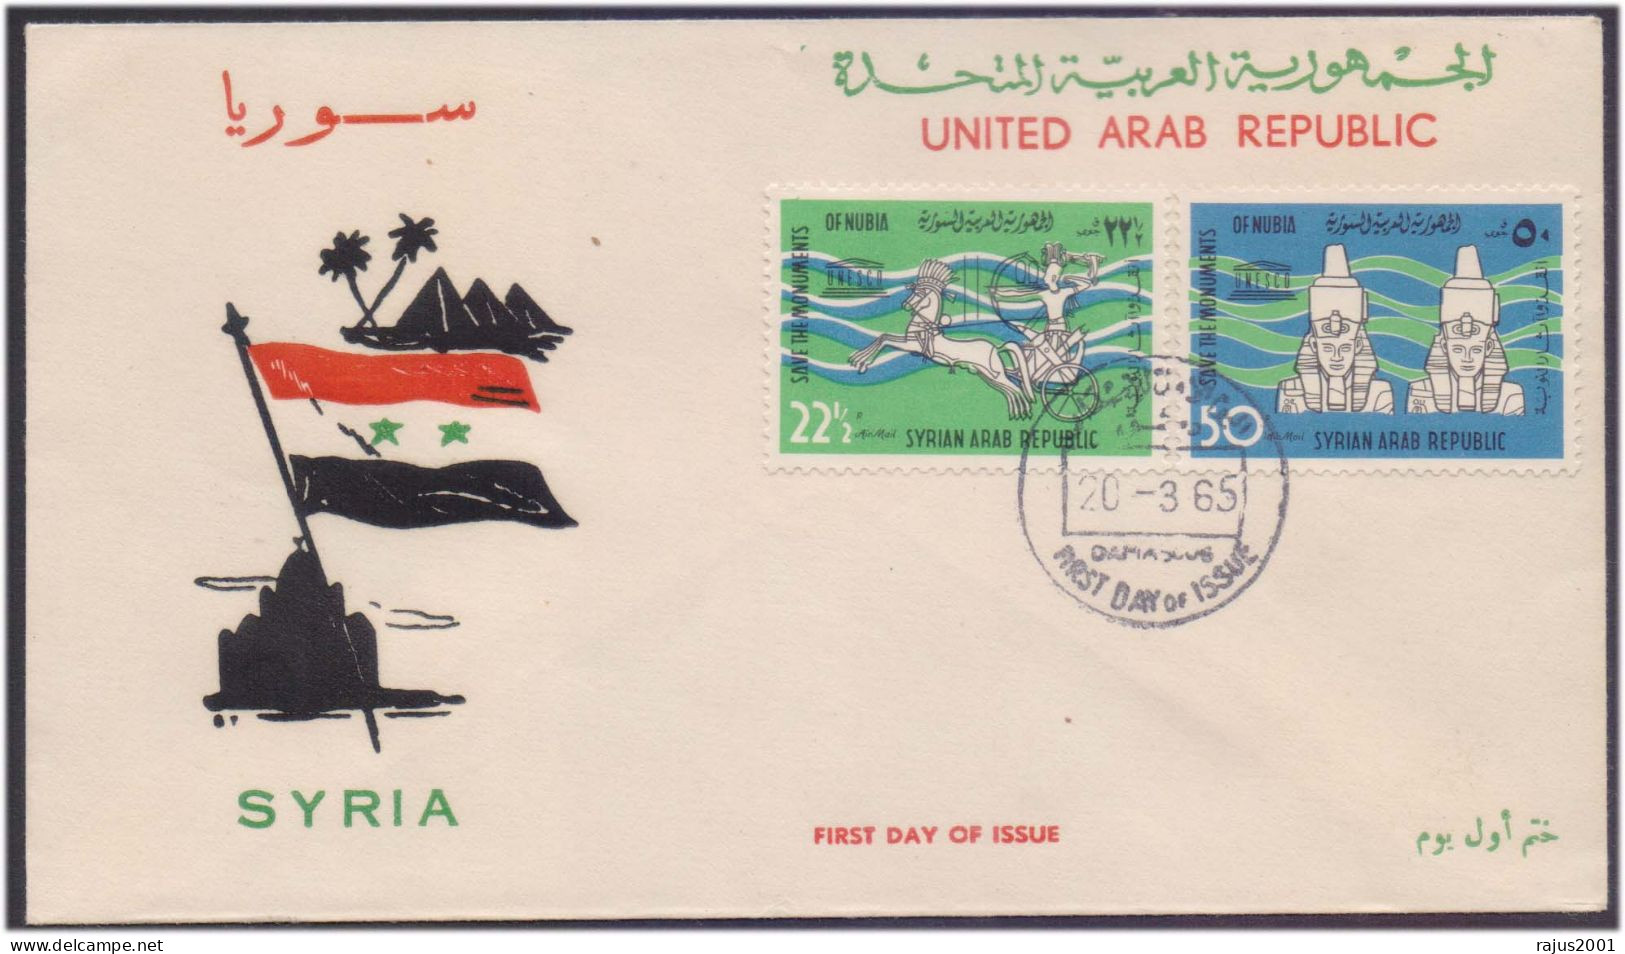 Save Monuments Of Nubia, Abu Simbel Temple, Egyptology Pharaon, Pharaoh, Mythology, UNESCO, Syria FDC 1965 - Egiptología